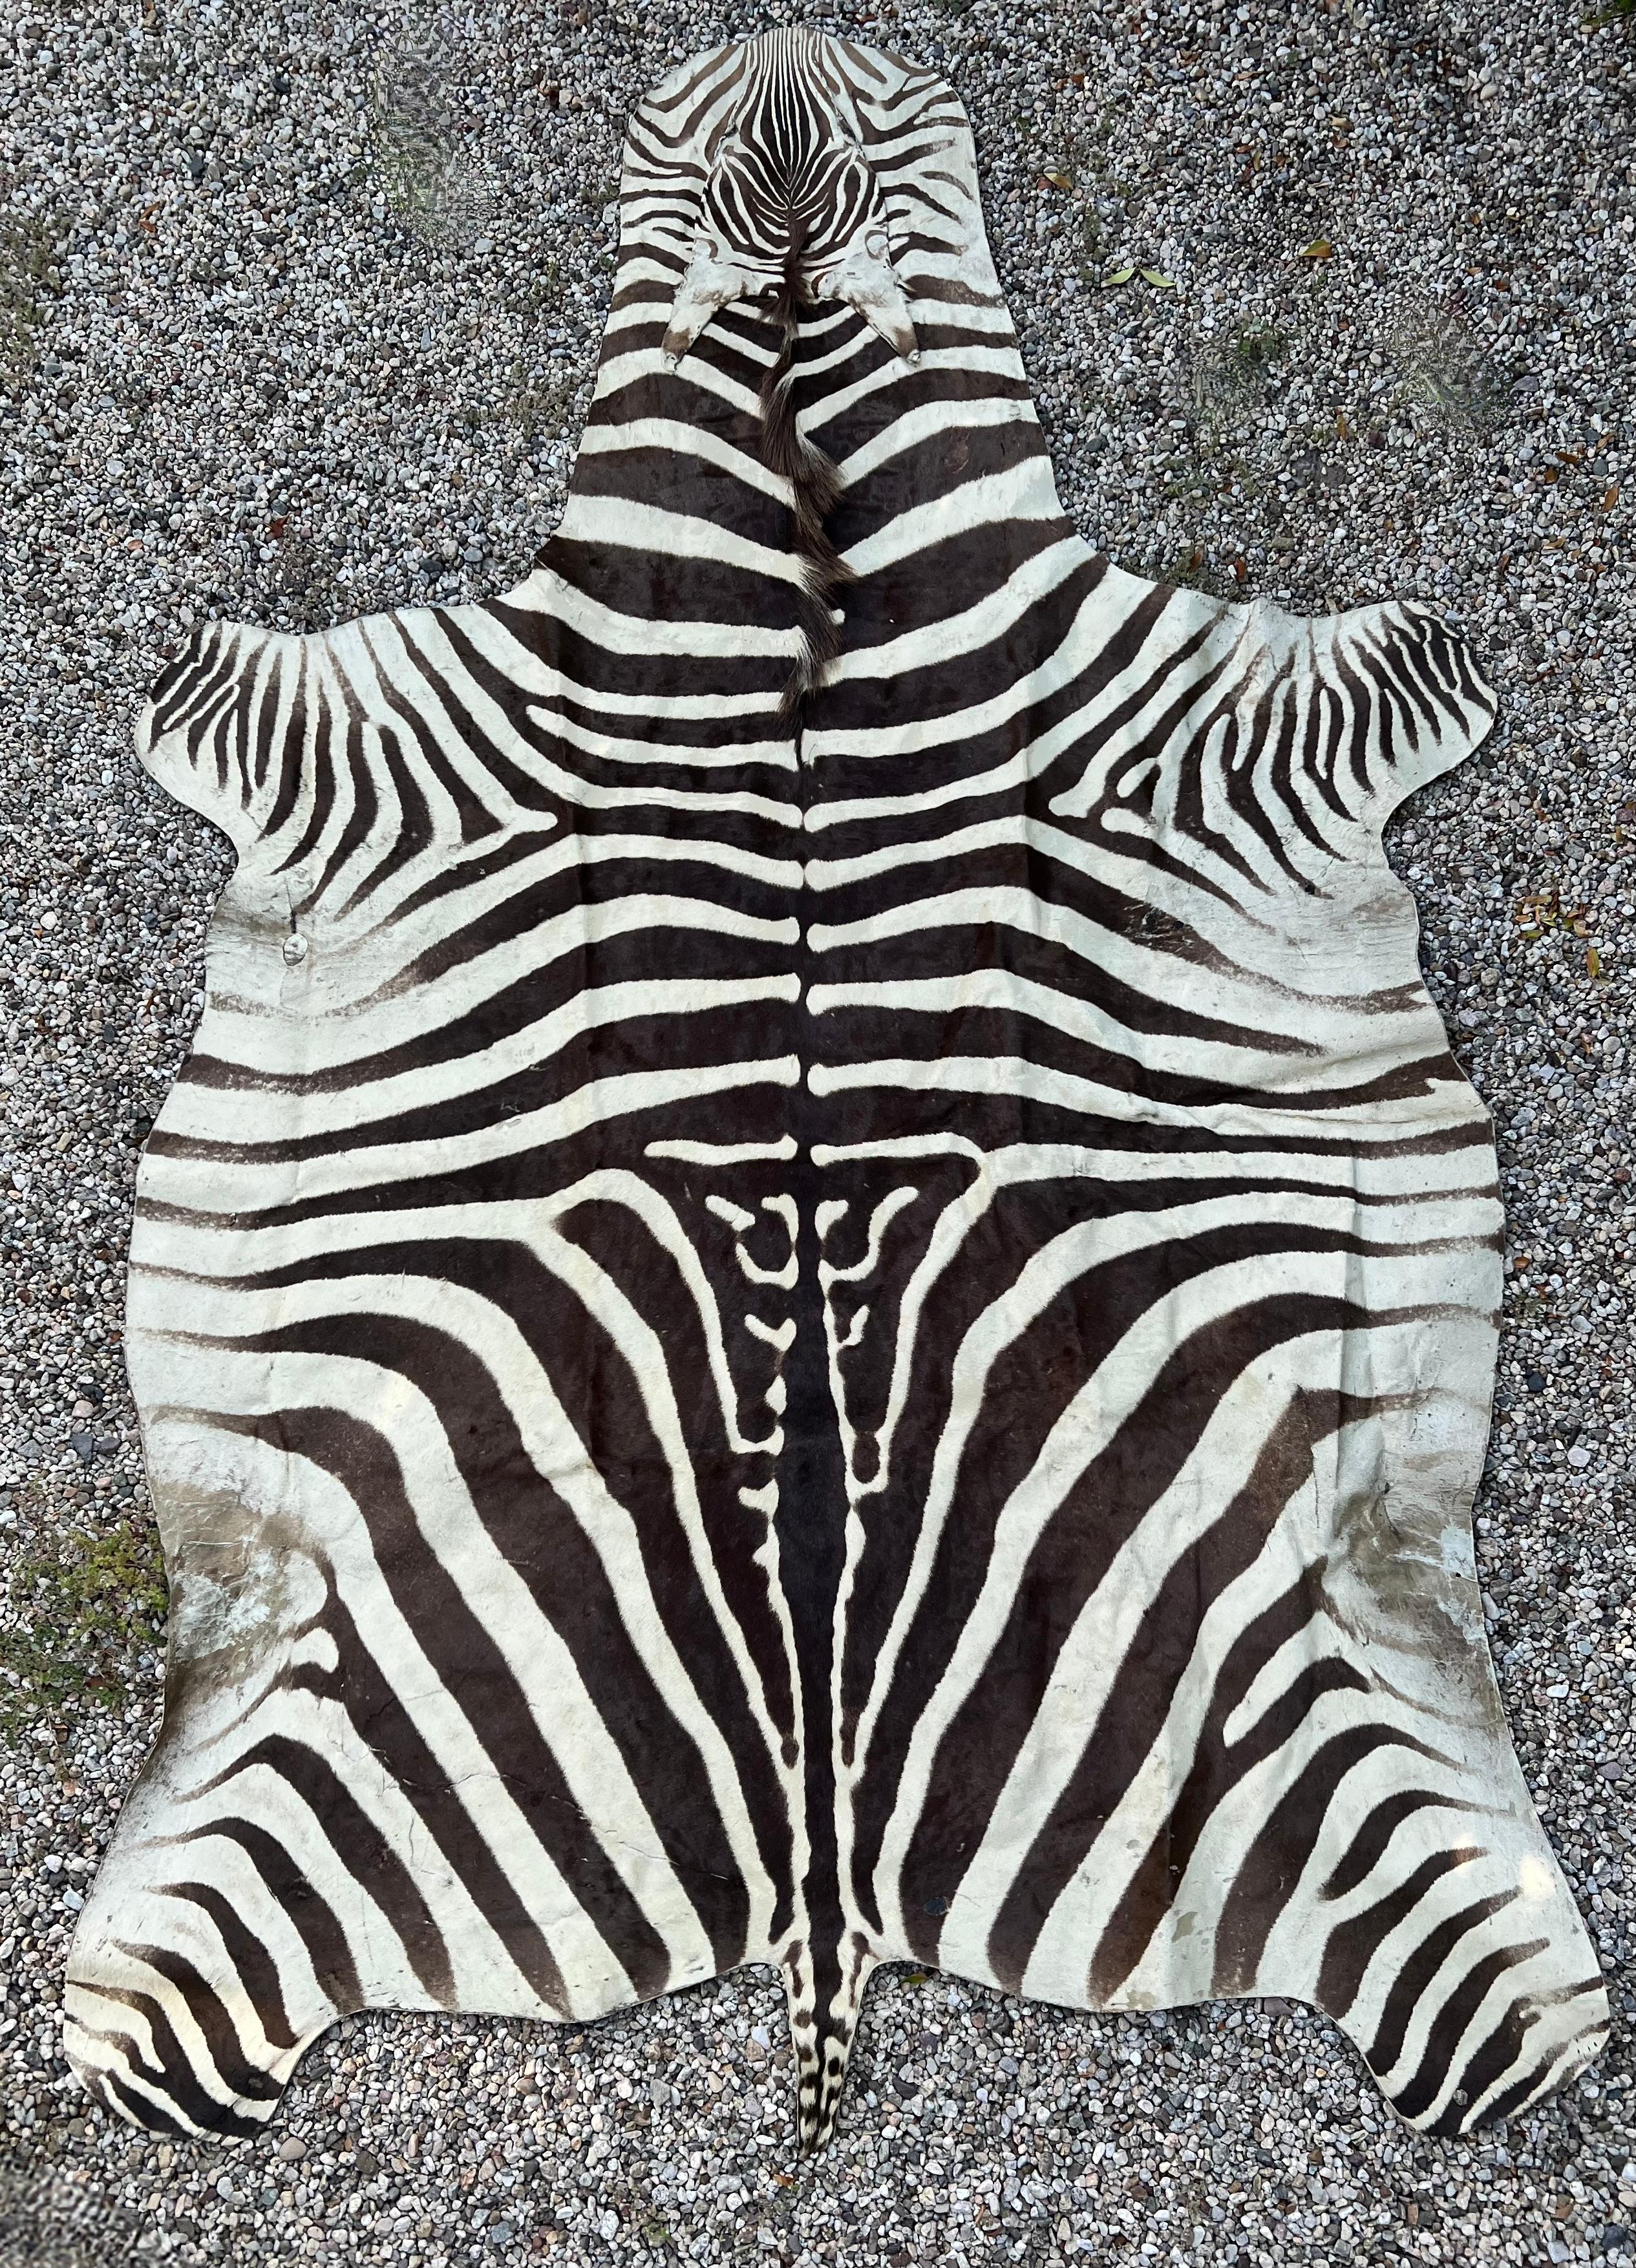 Ein wunderschöner Zebrafellteppich - ein Kompliment für viele Umgebungen und besonders für solche mit einem Ralph Lauren-Statement.  

Tierfelle bringen viel Energie in einen Raum, und das Design und die Muster fügen eine natürliche Aussage von